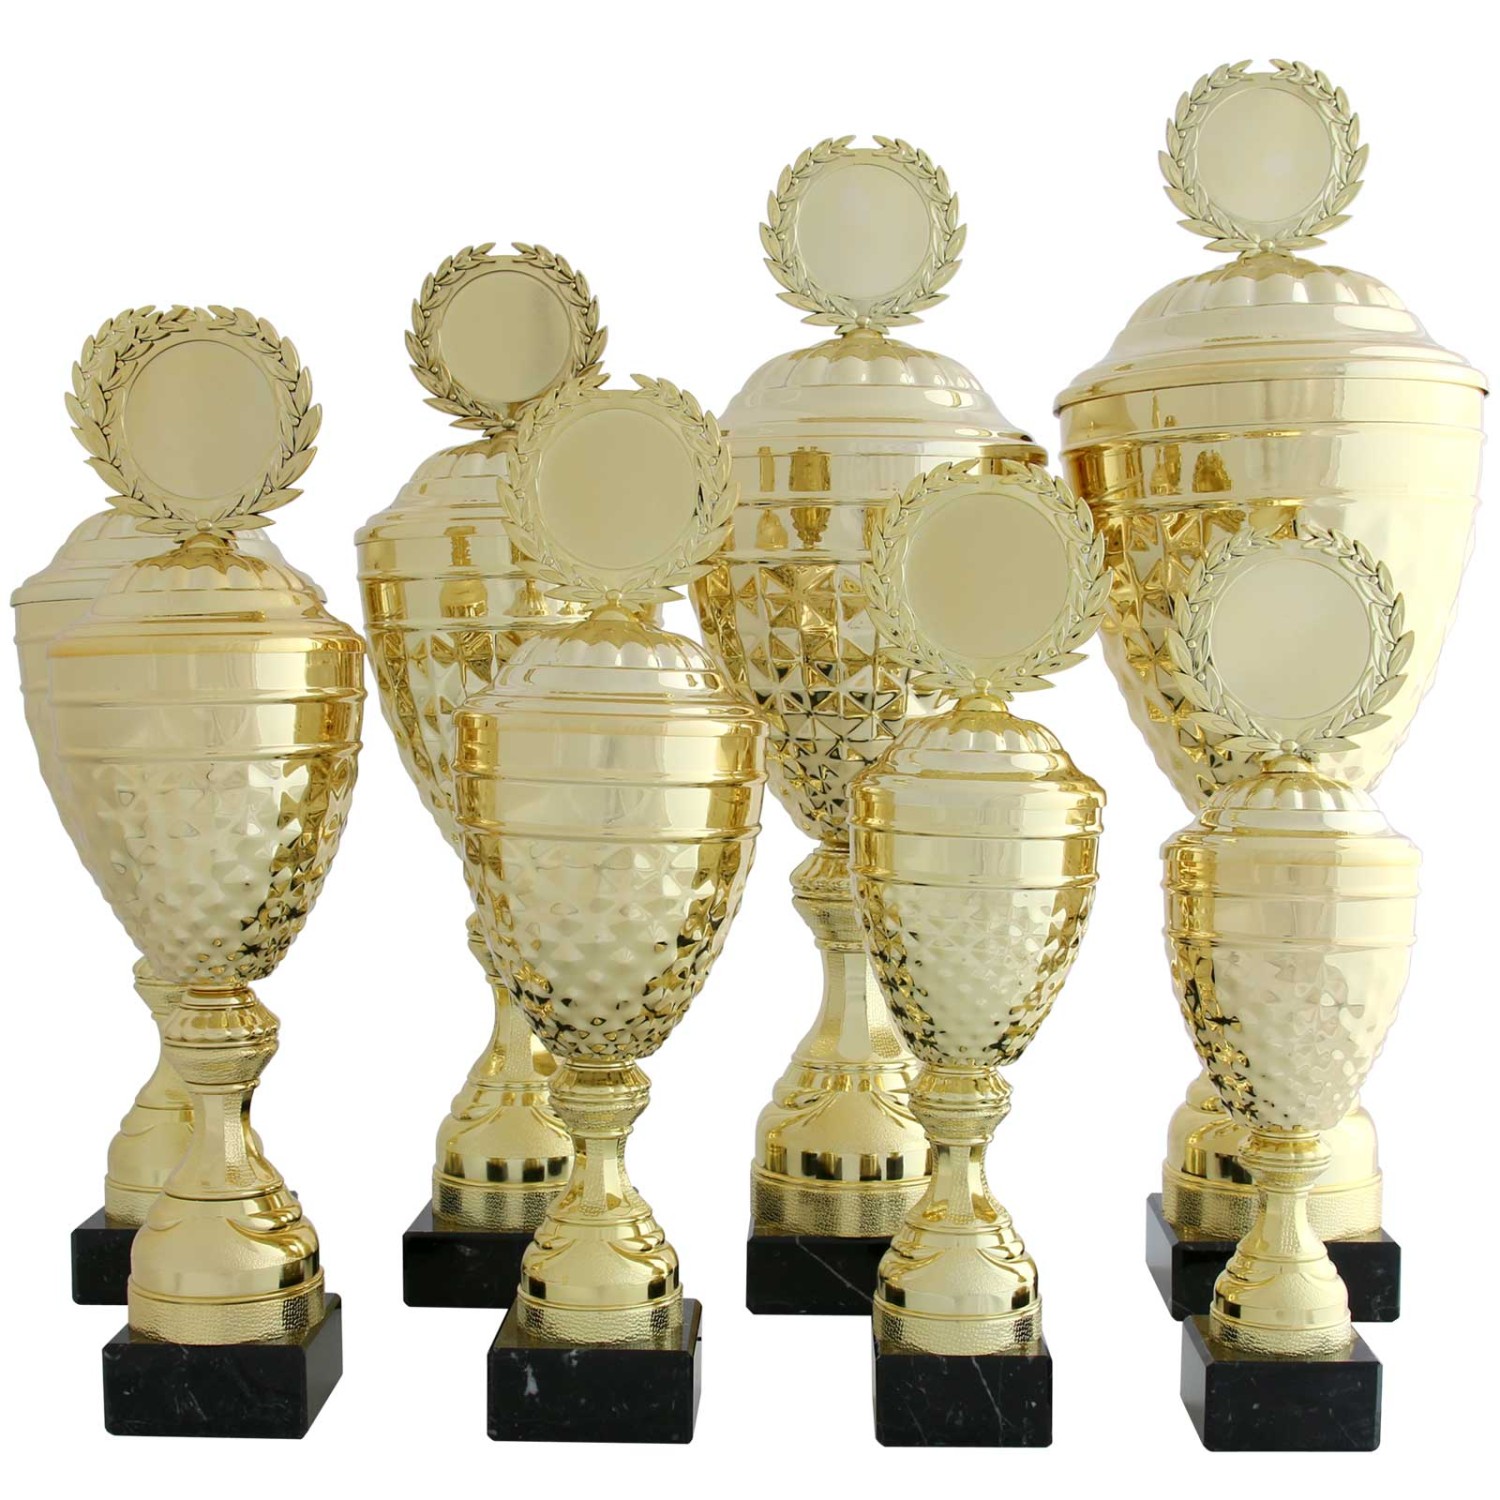 2. Foto Pokal ALBI Pokalset Metall gold mit Deckel 8 Größen mit Gravur (Höhe: 49 cm hoch)